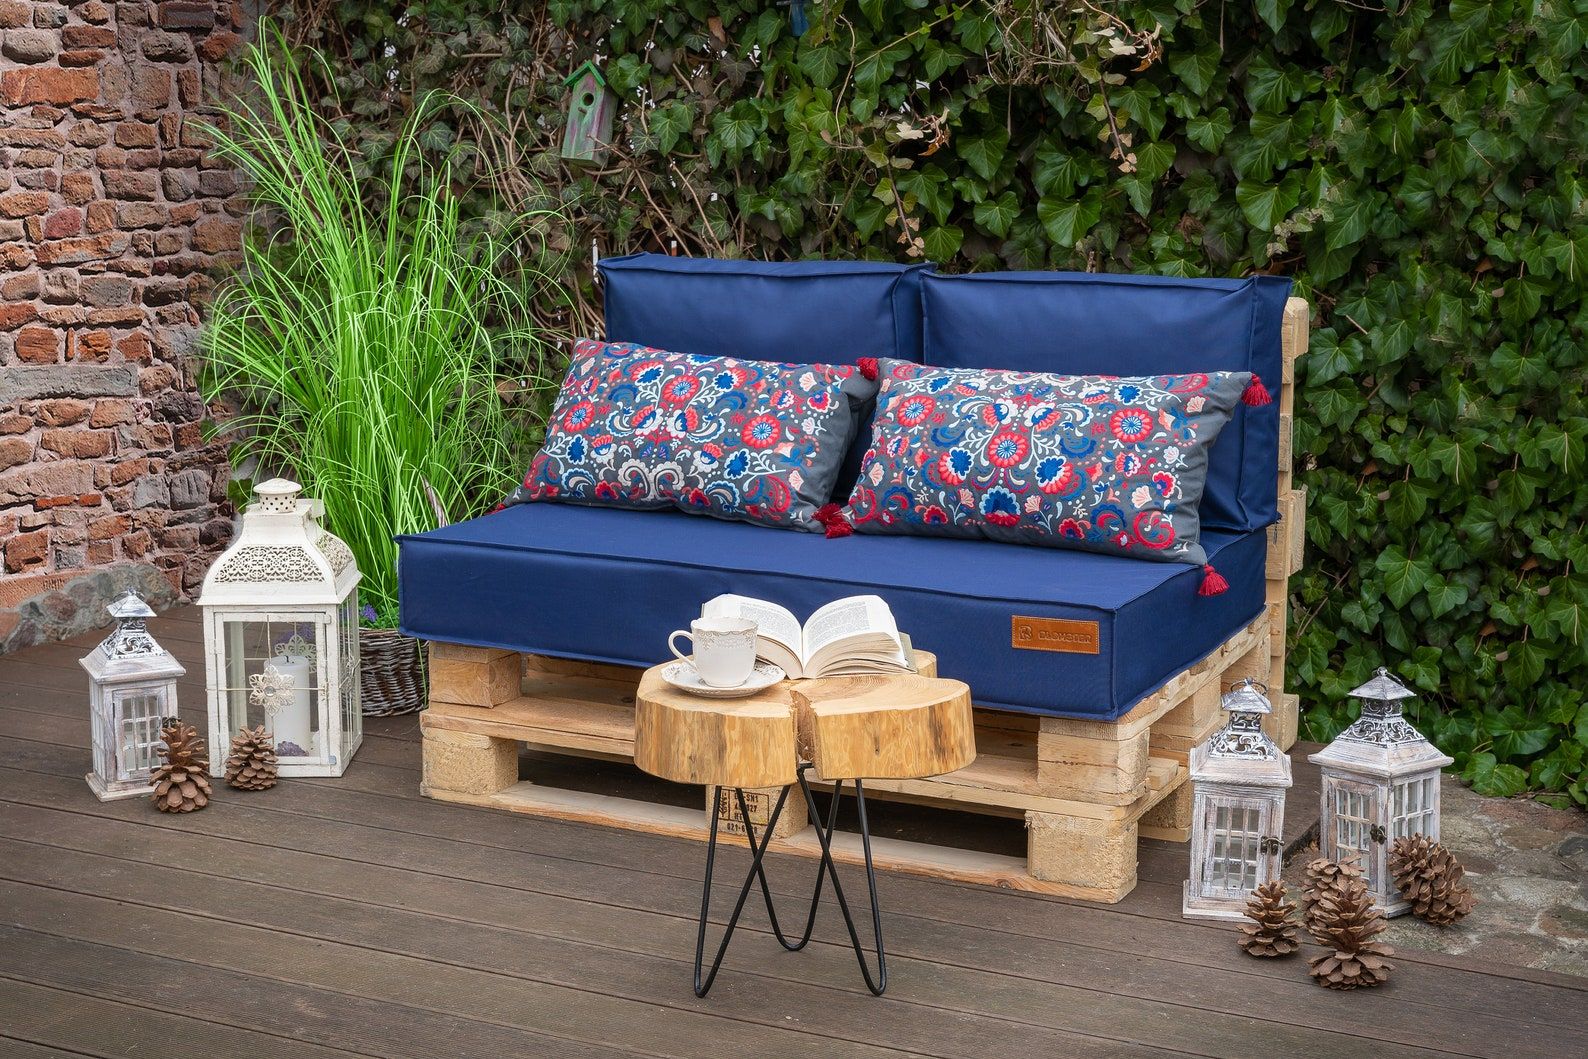 Luxury garden cushions for Pallet garden seat garden bench cushions in/outdoor 